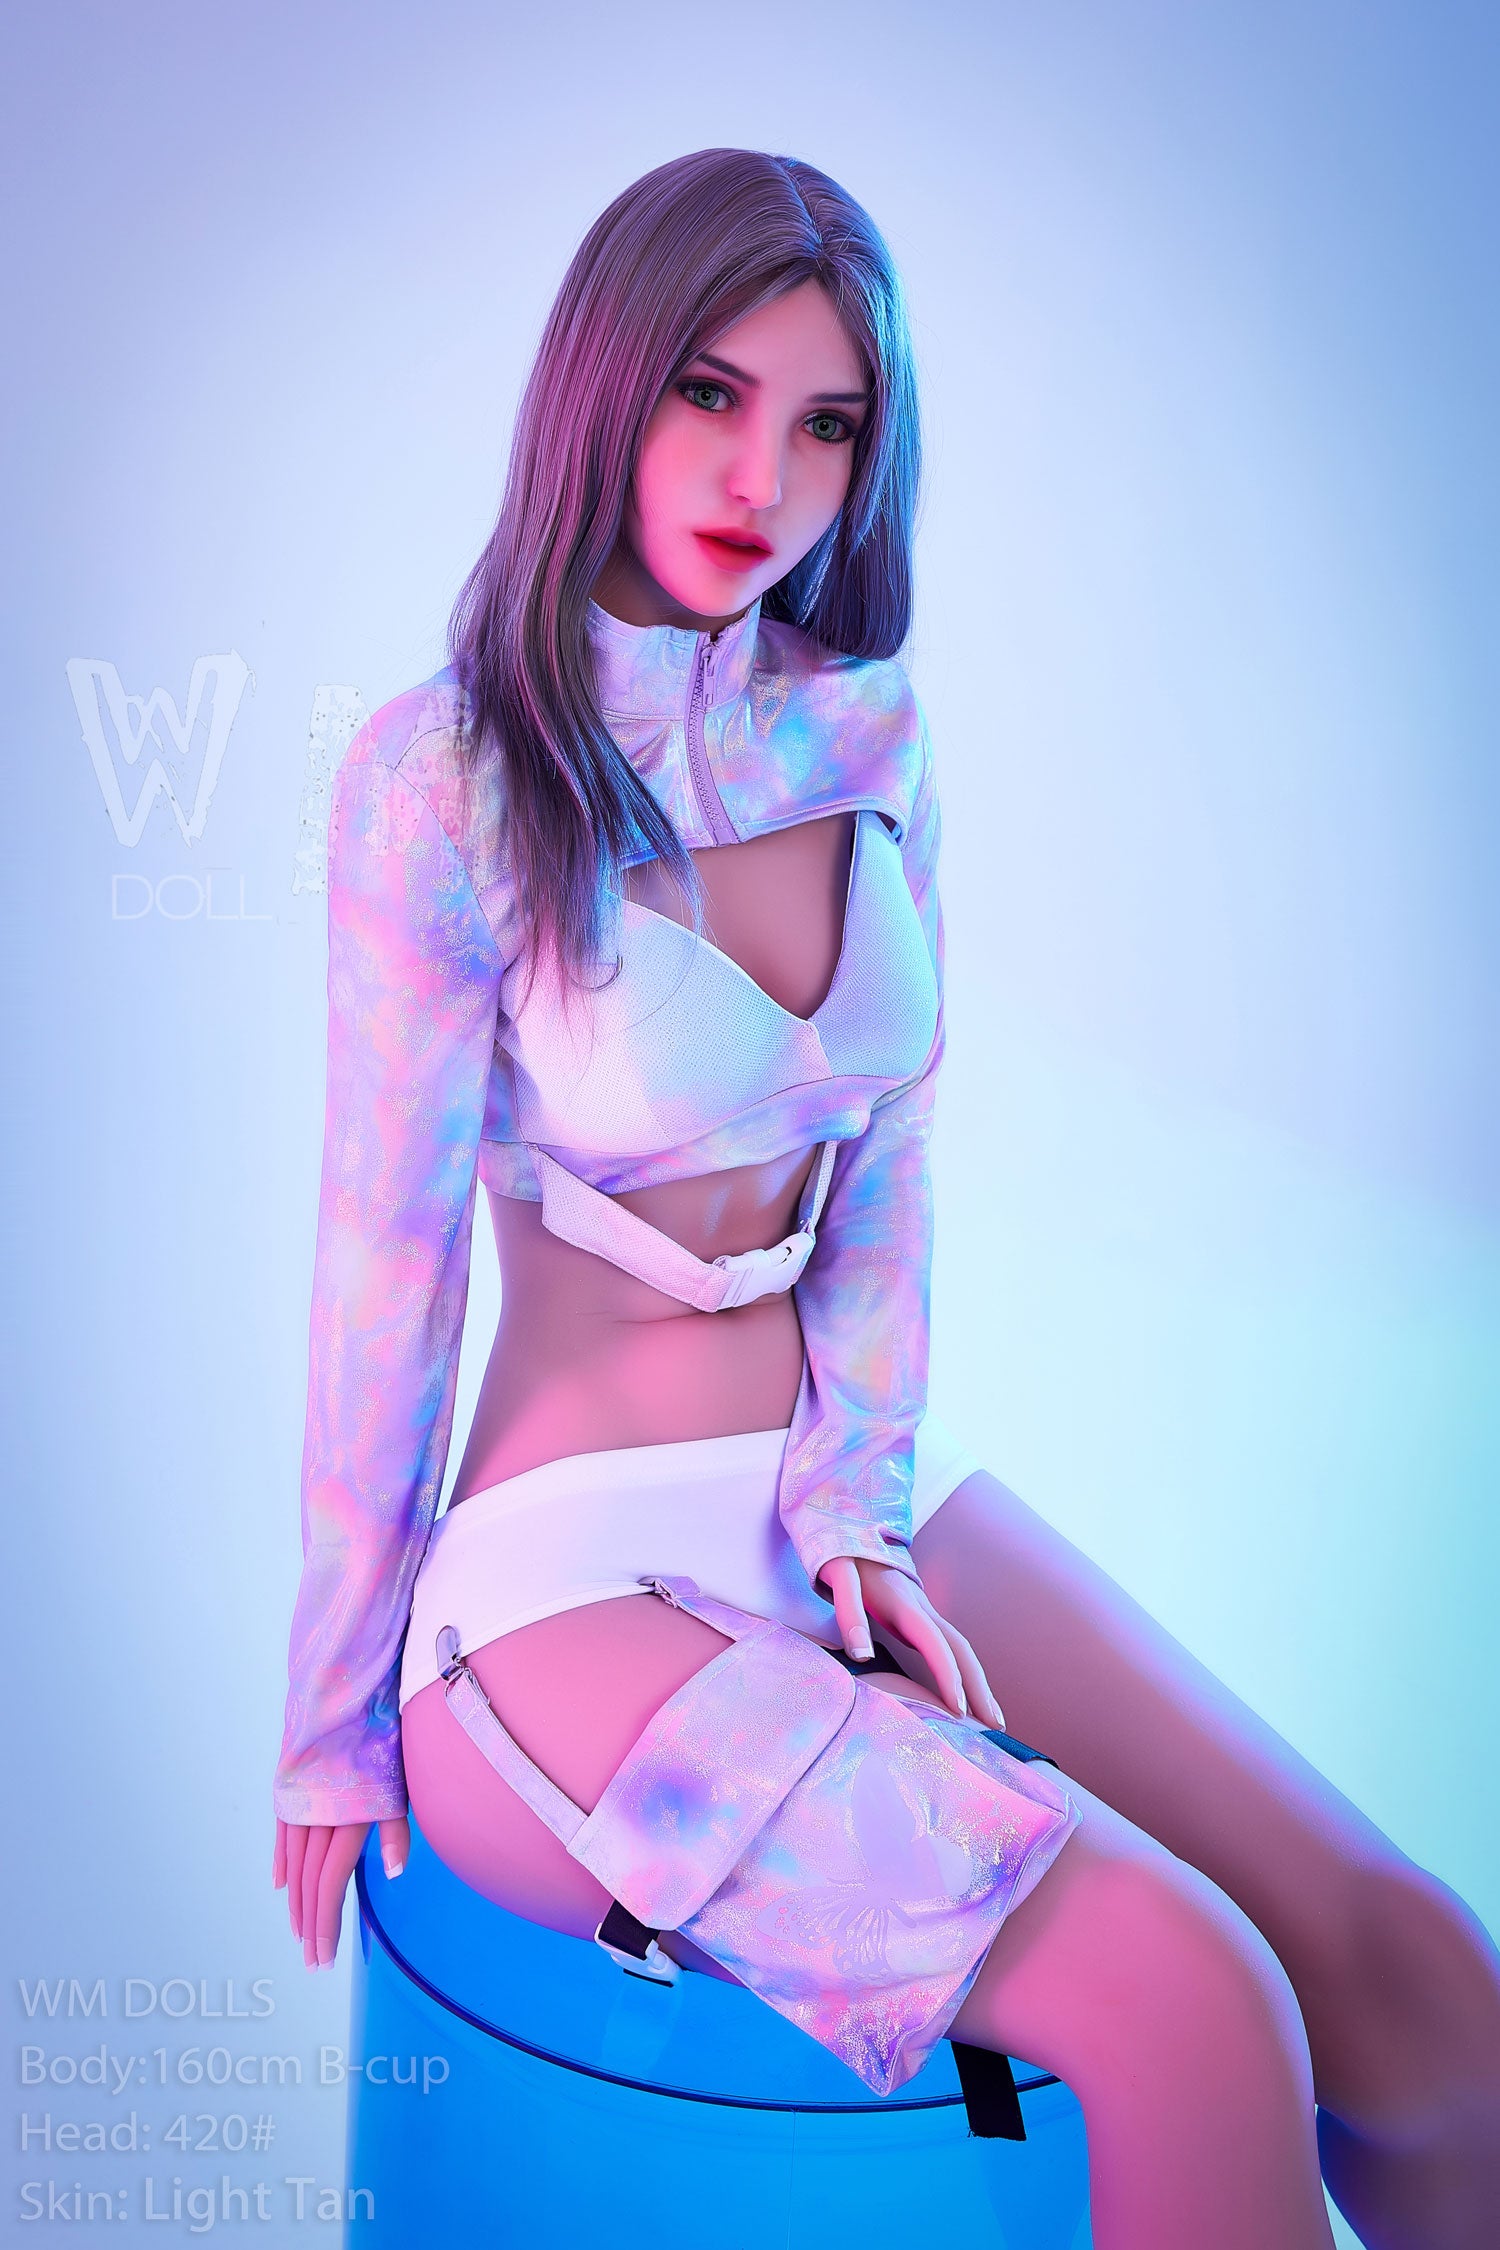 WM DOLL 160 CM B TPE - Emilia | Buy Sex Dolls at DOLLS ACTUALLY